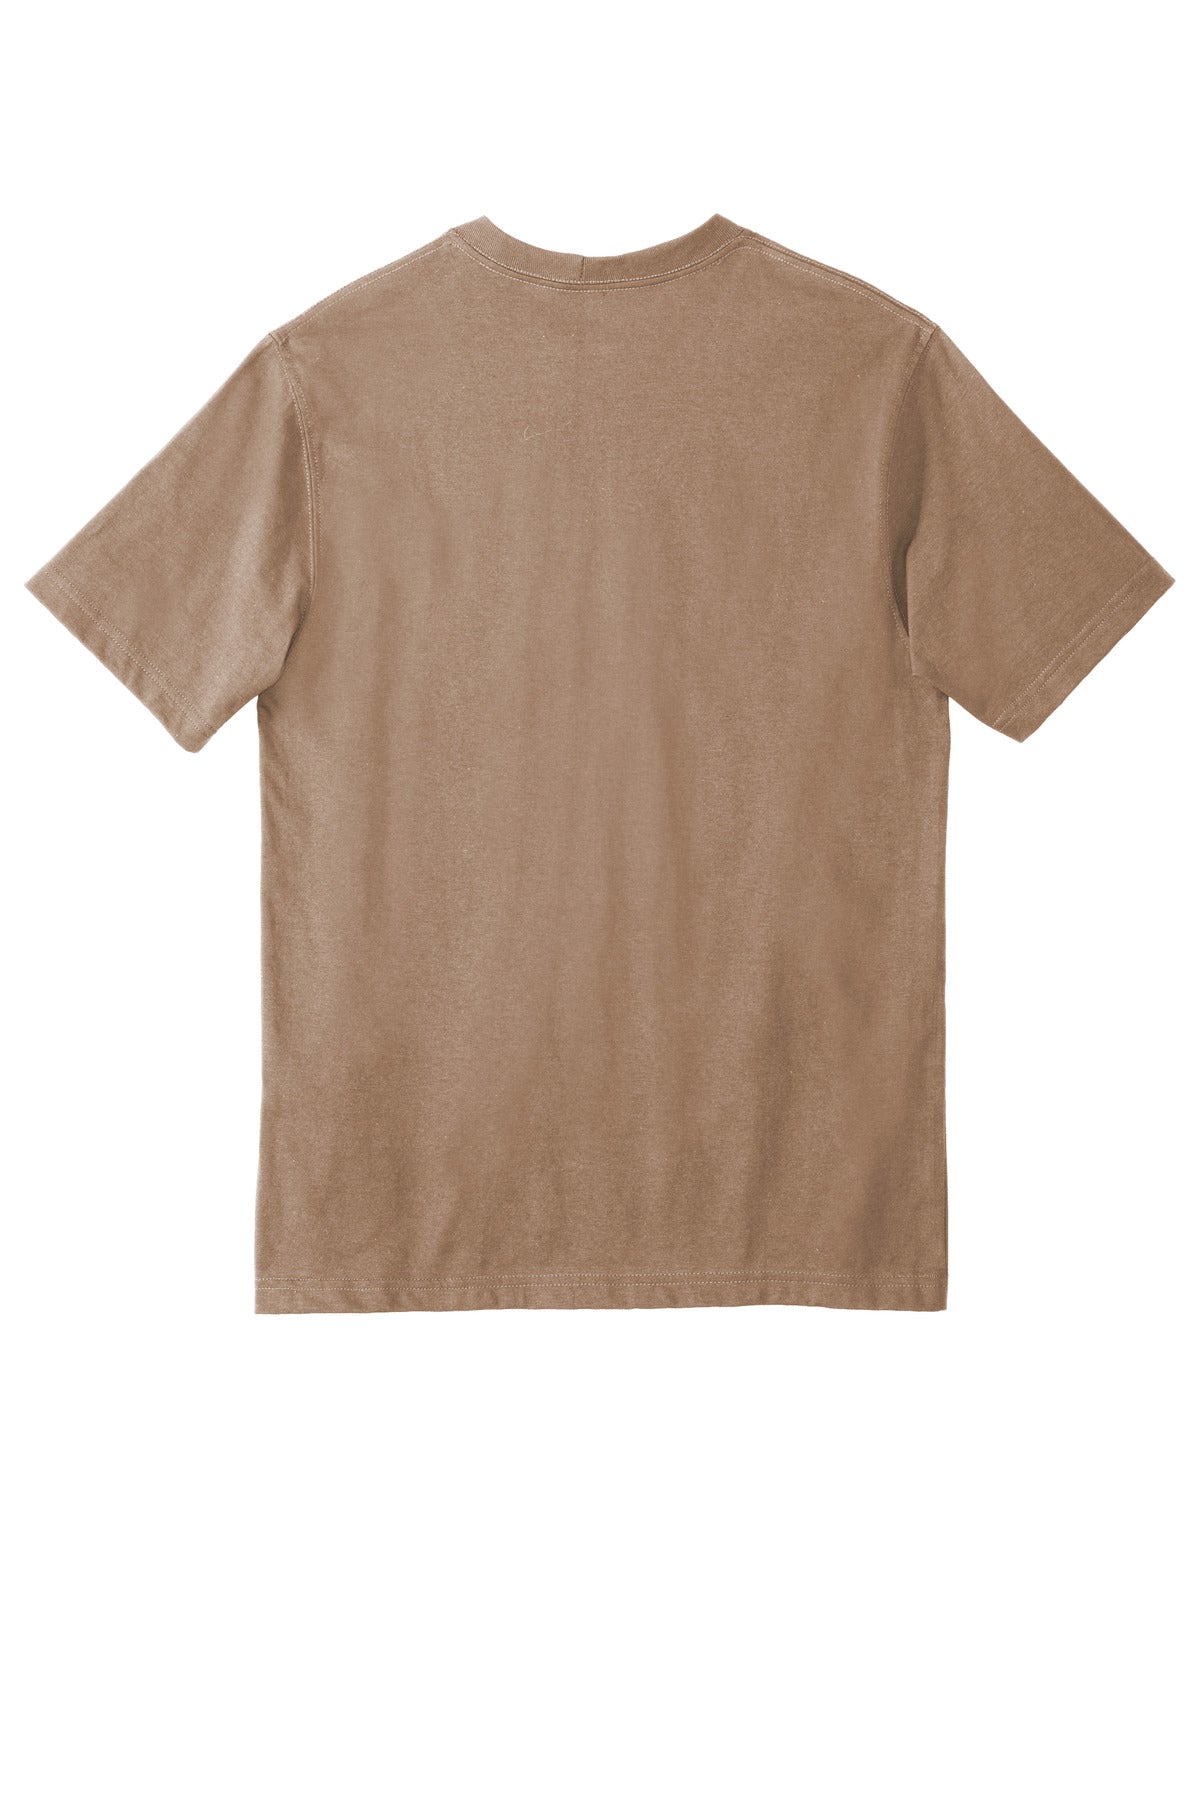 Carhartt  Tall Workwear Pocket Short Sleeve T-Shirt. CTTK87